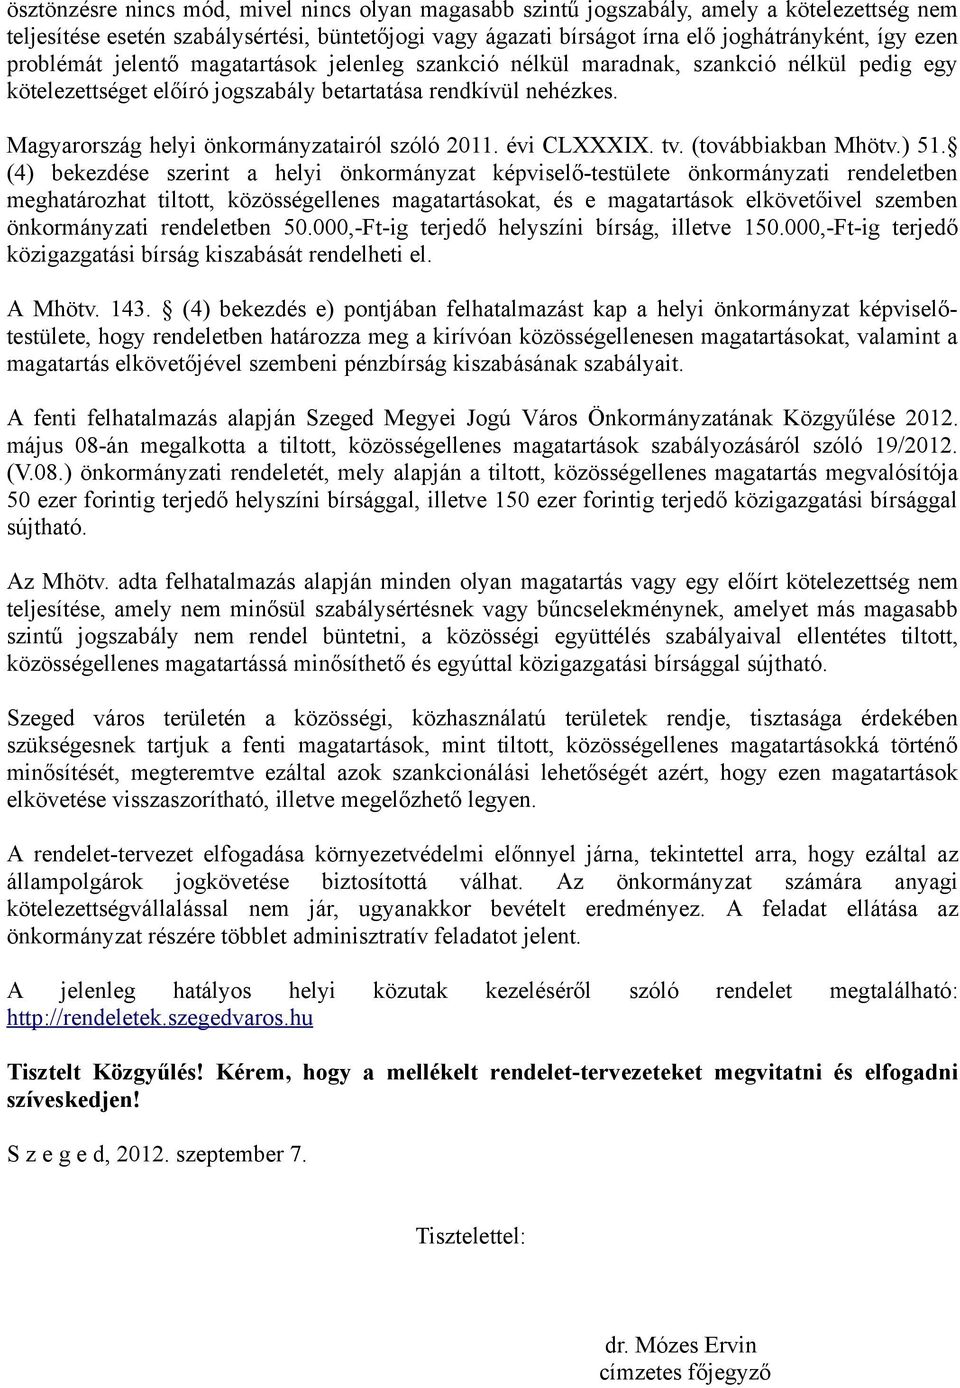 Magyarország helyi önkormányzatairól szóló 2011. évi CLXXXIX. tv. (továbbiakban Mhötv.) 51.